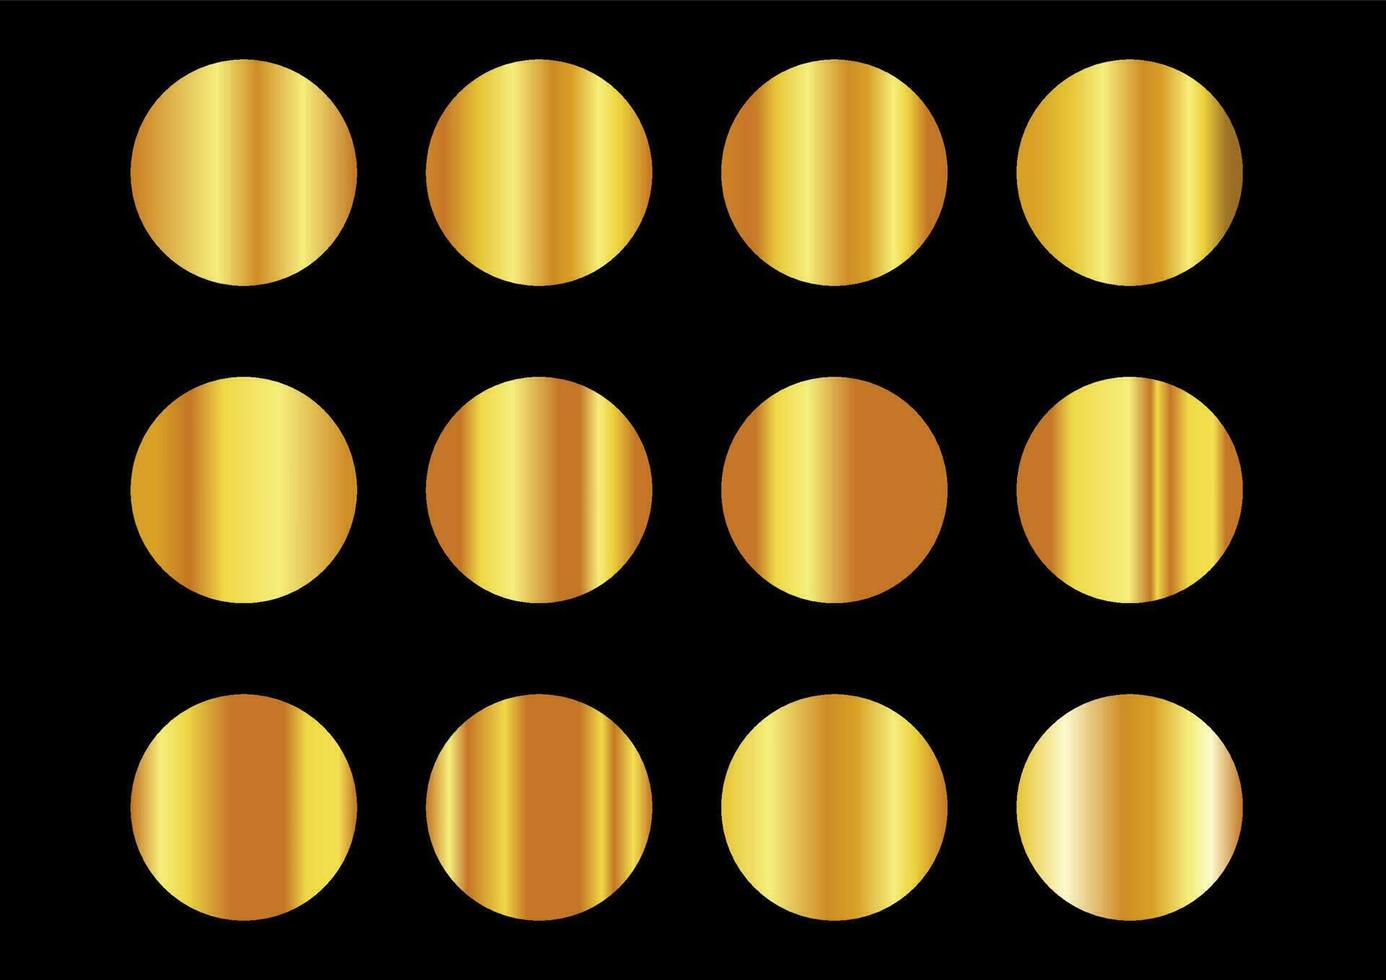 amarelo ouro gradientes metálico gradientes conjunto vetor